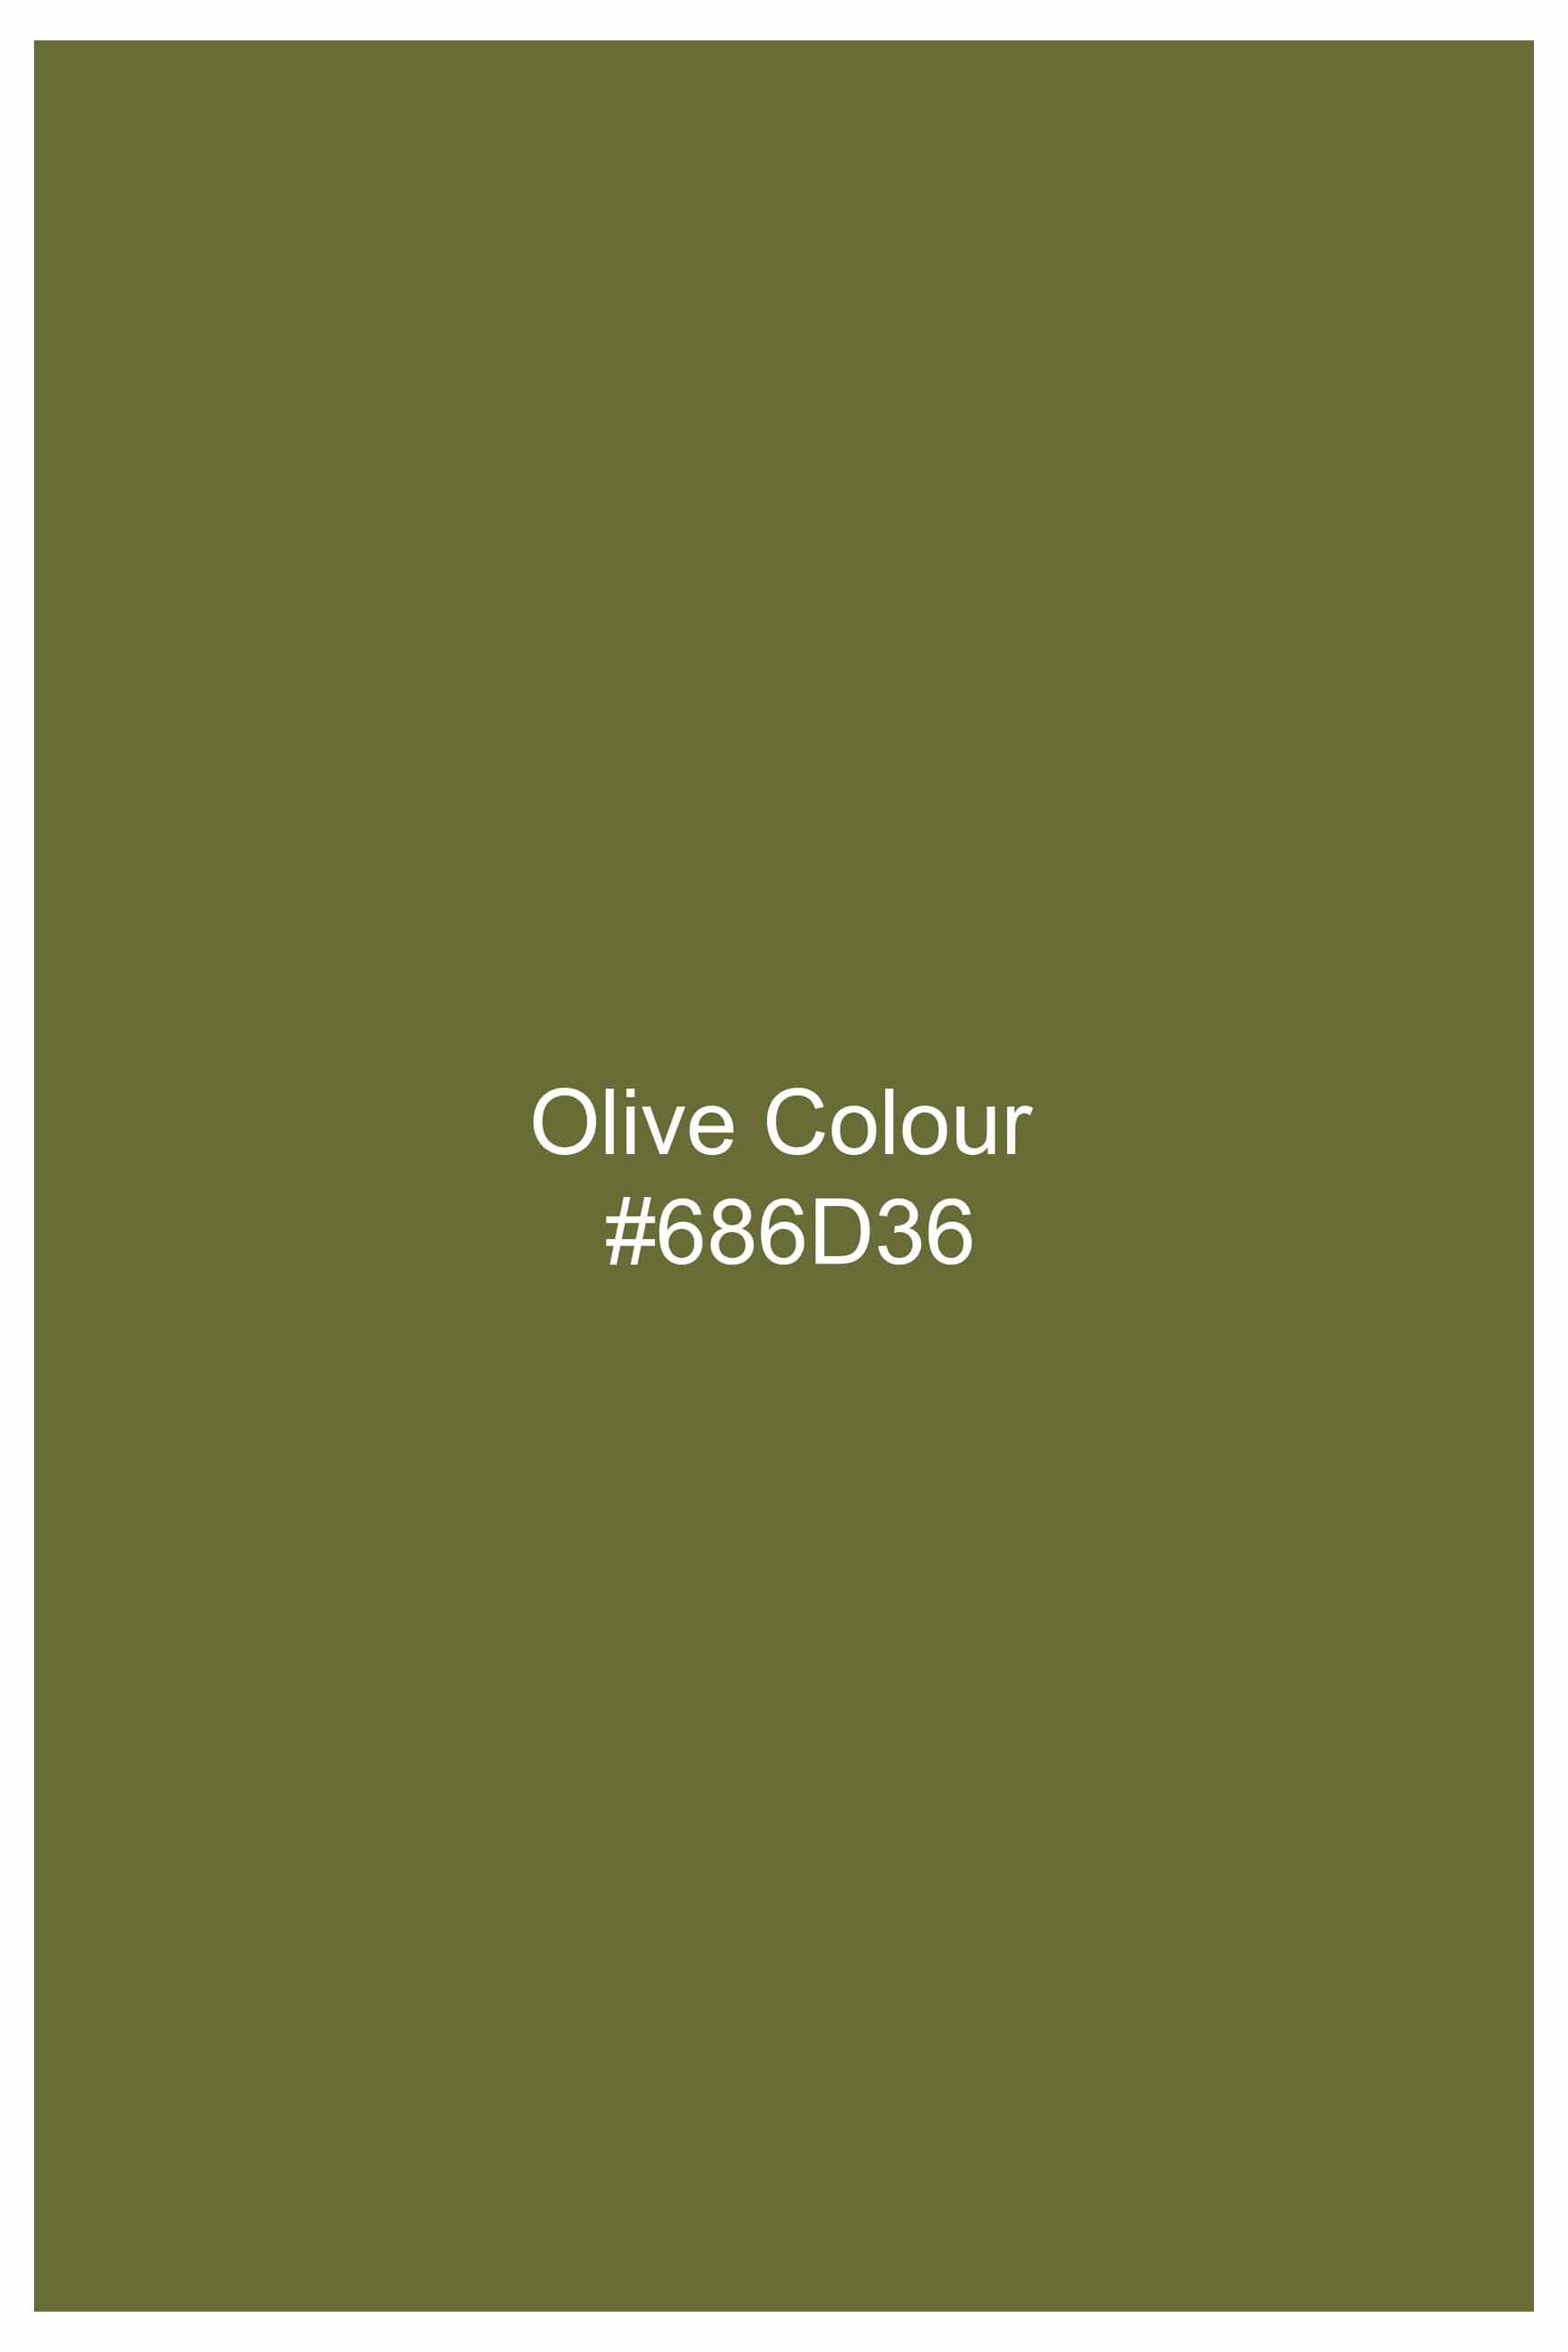 Olive Green Luxurious Linen Shirt